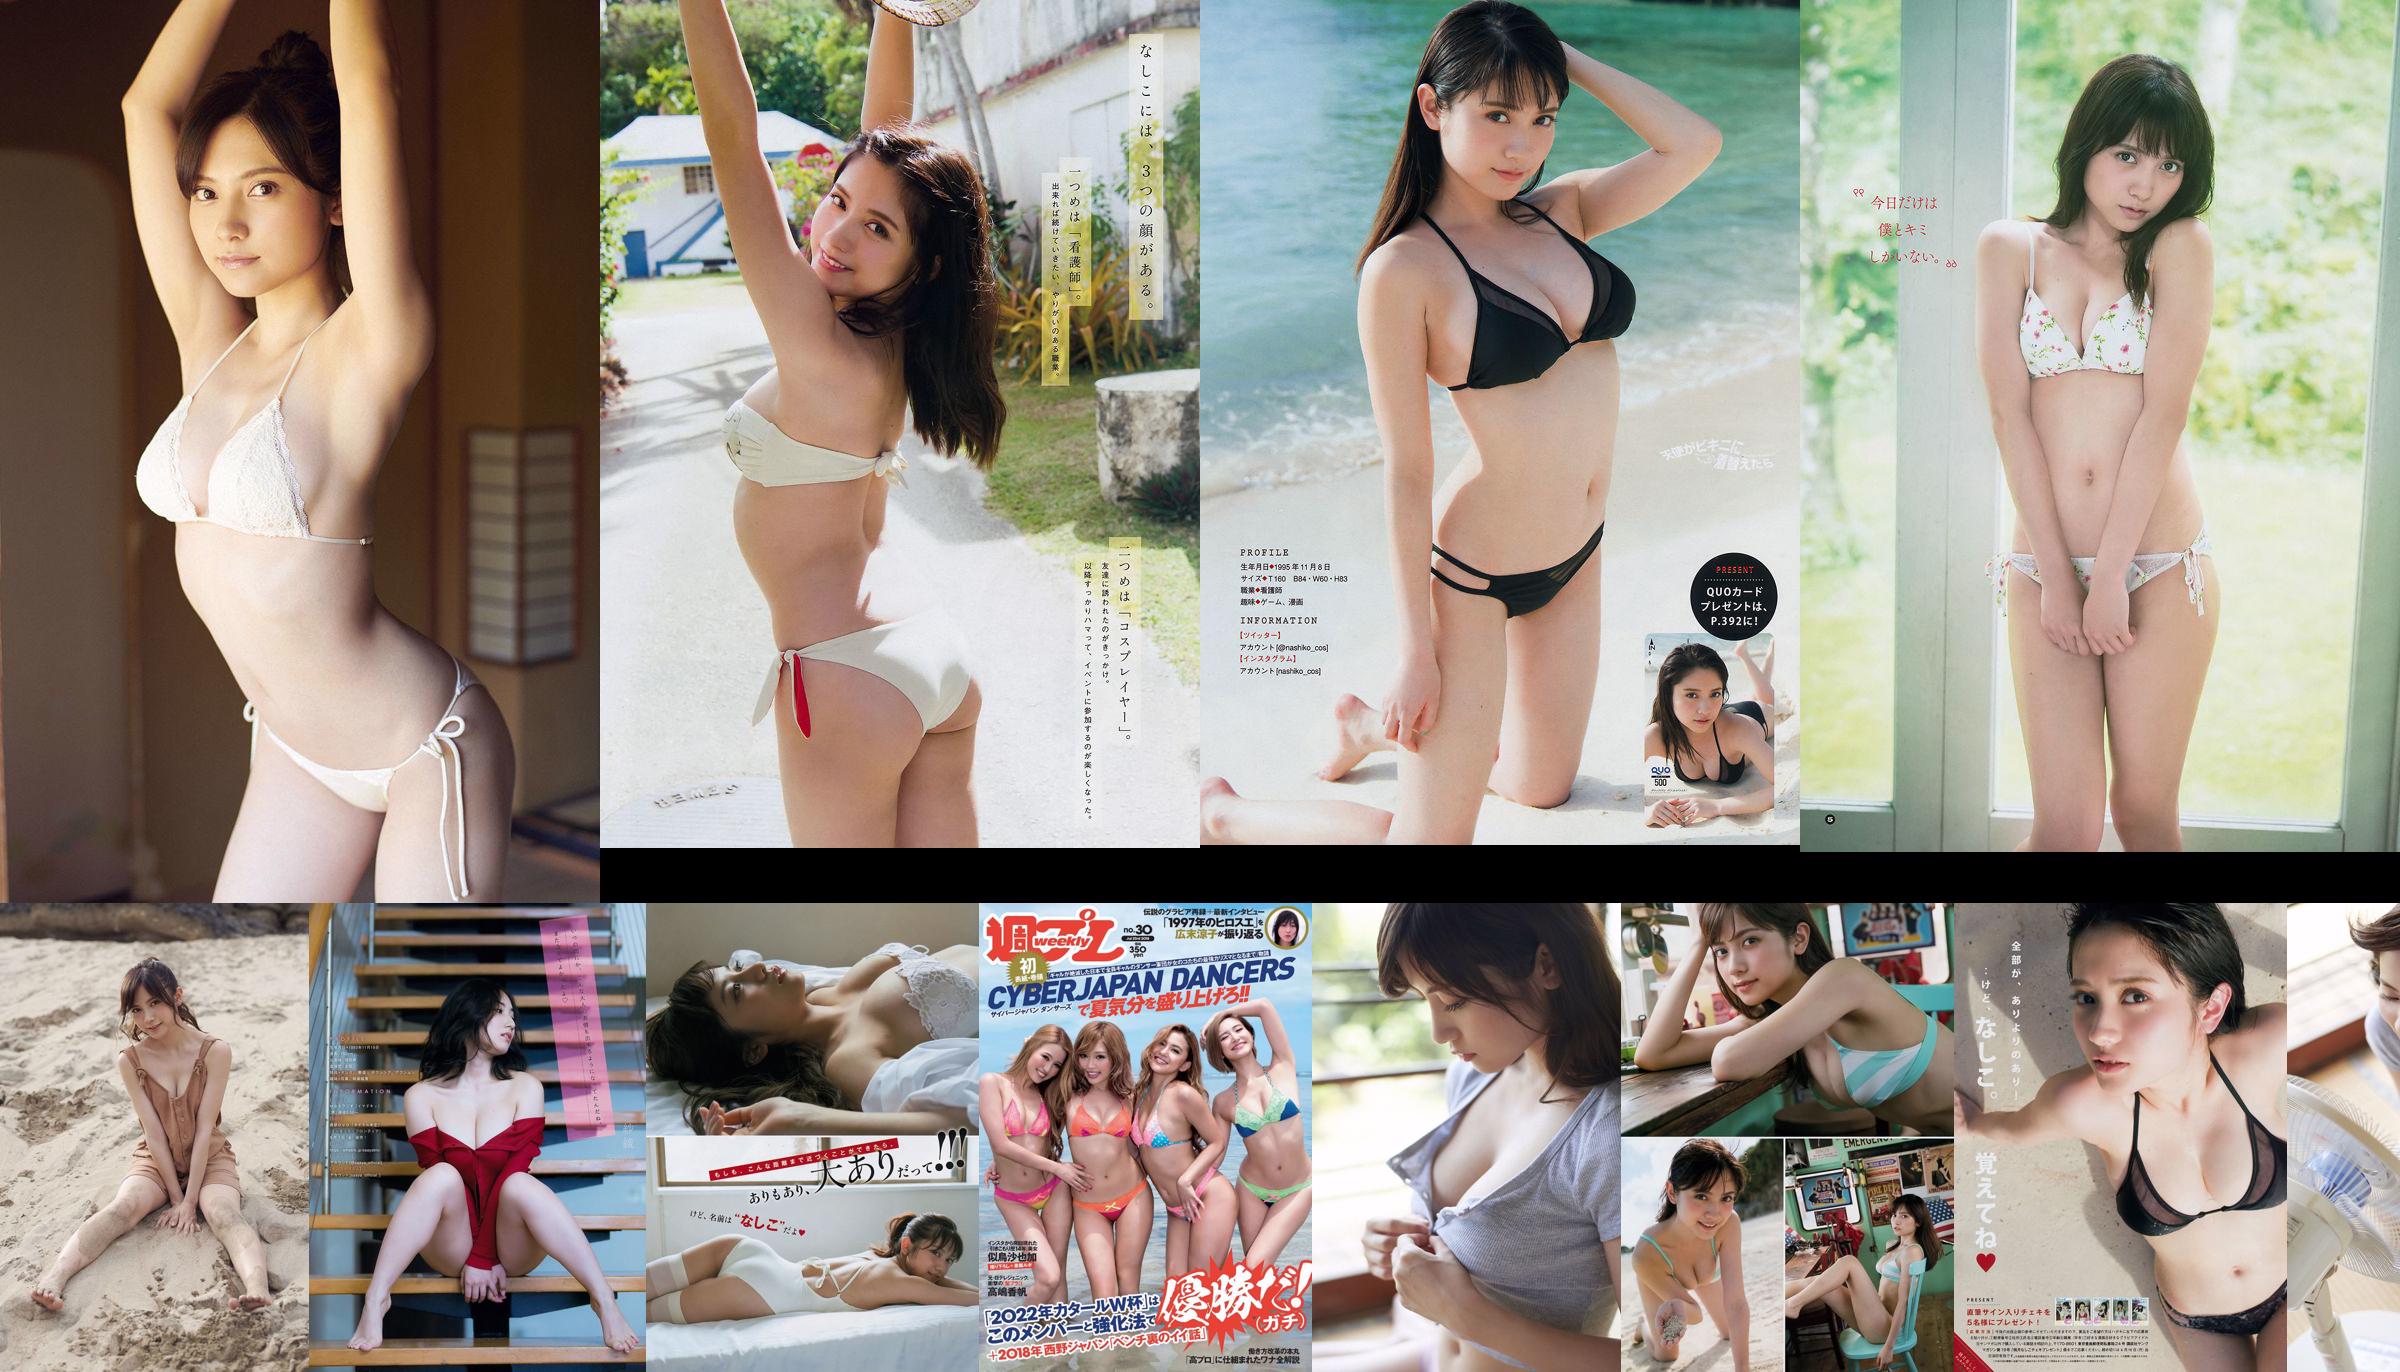 [Young Magazine] Nashiko Momotsuki 2018 No.19 Photograph No.b07c5d Page 1